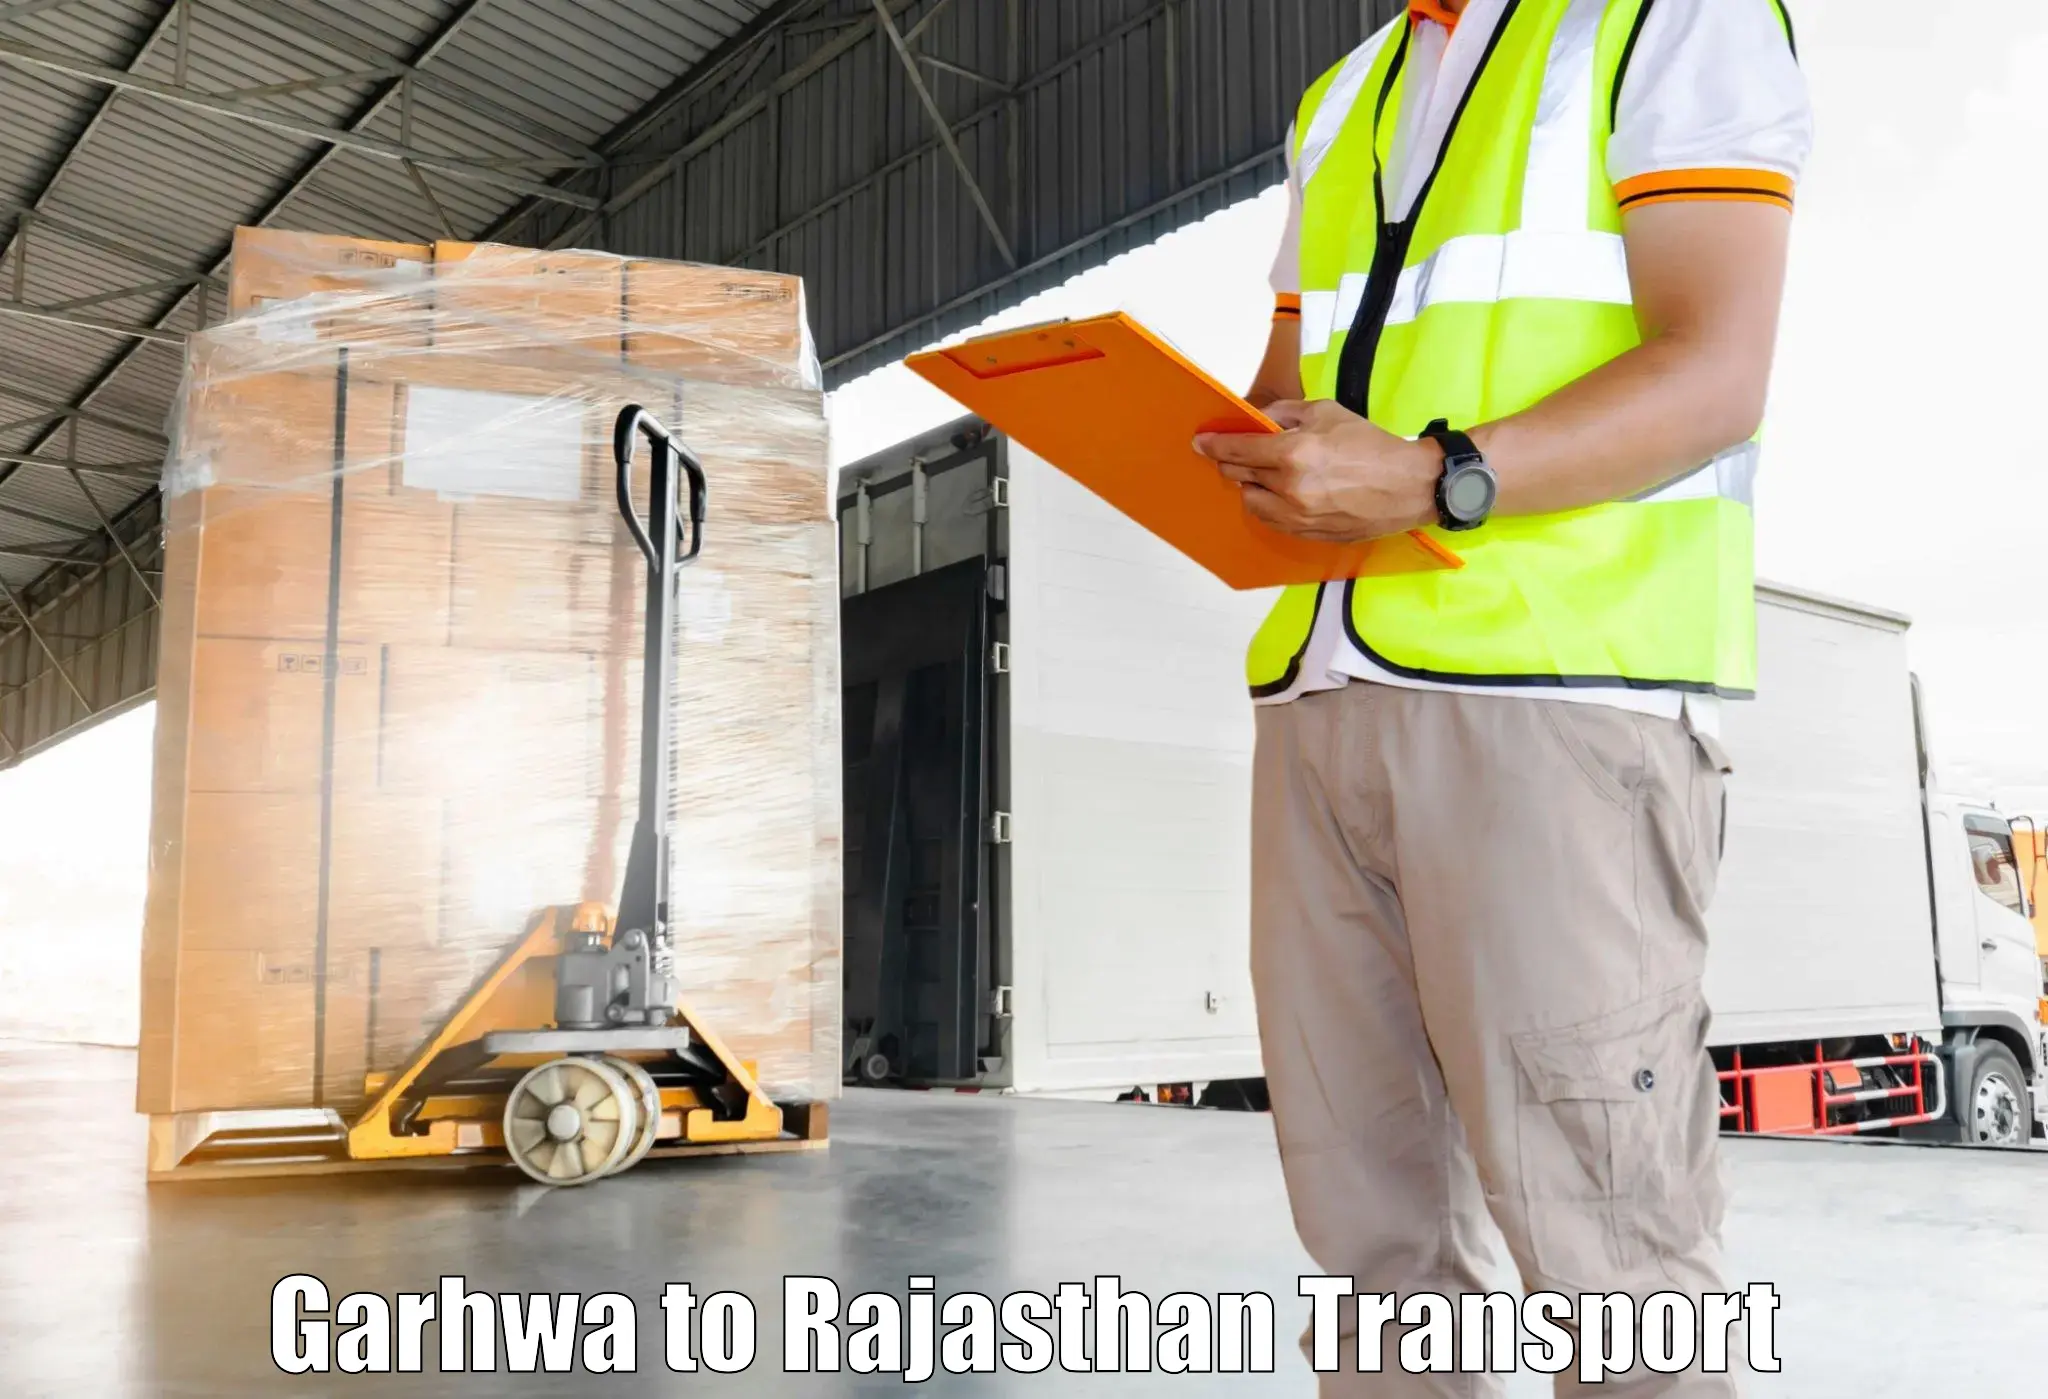 Bike transport service Garhwa to Rajasthan